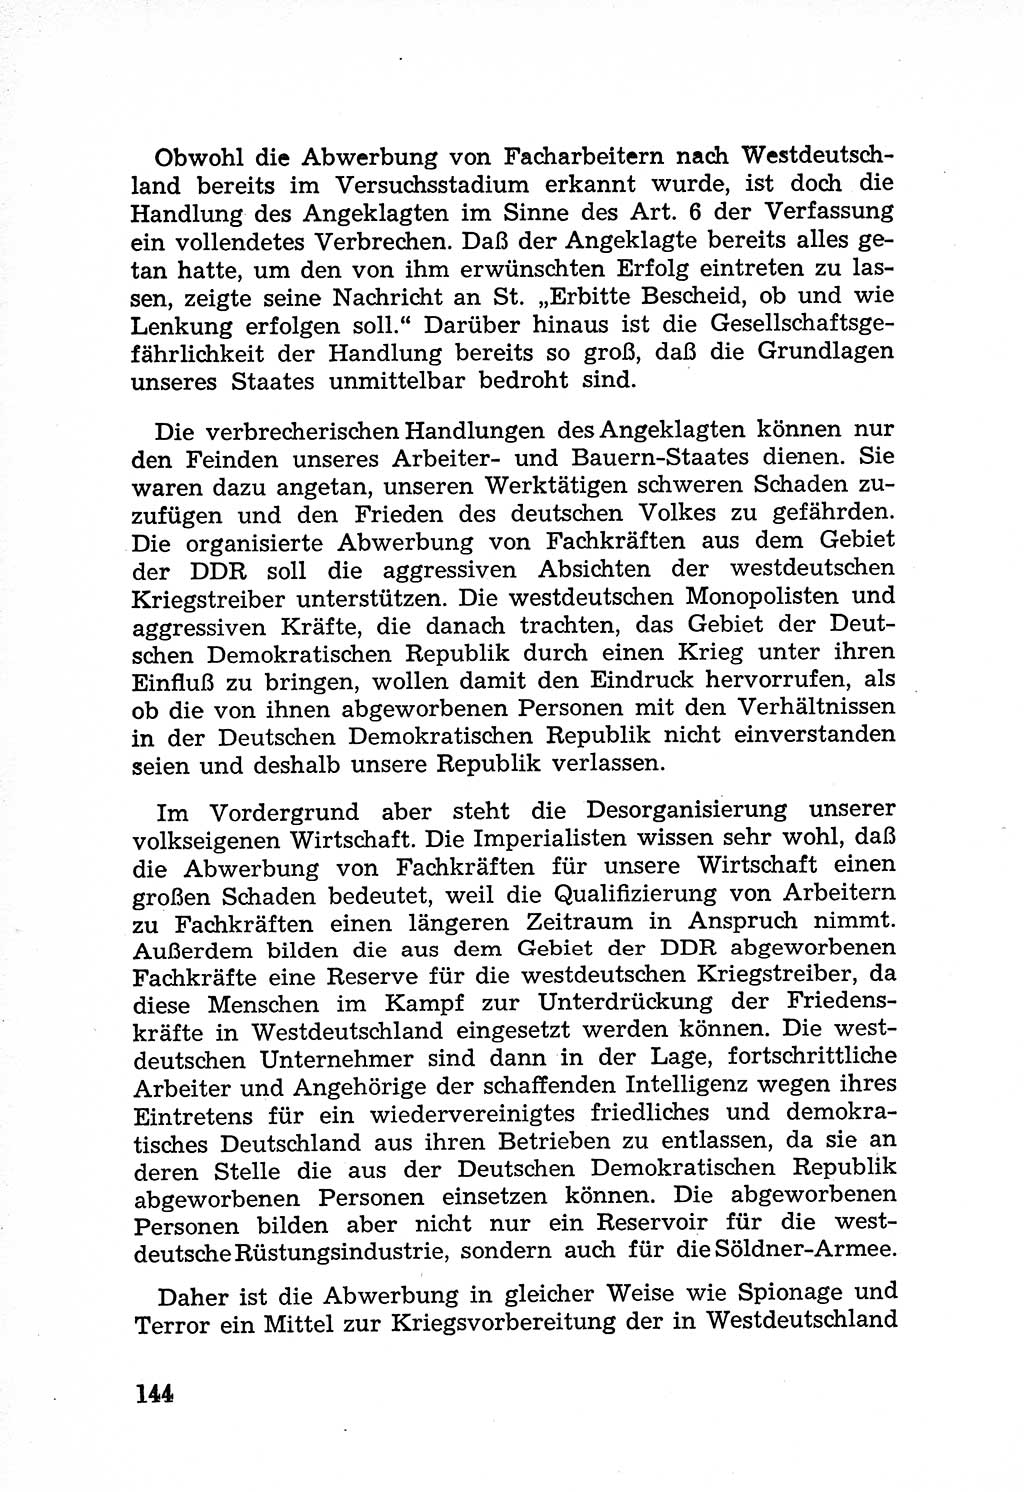 Rechtsstaat in zweierlei Hinsicht, Untersuchungsausschuß freiheitlicher Juristen (UfJ) [Bundesrepublik Deutschland (BRD)] 1956, Seite 144 (R.-St. UfJ BRD 1956, S. 144)